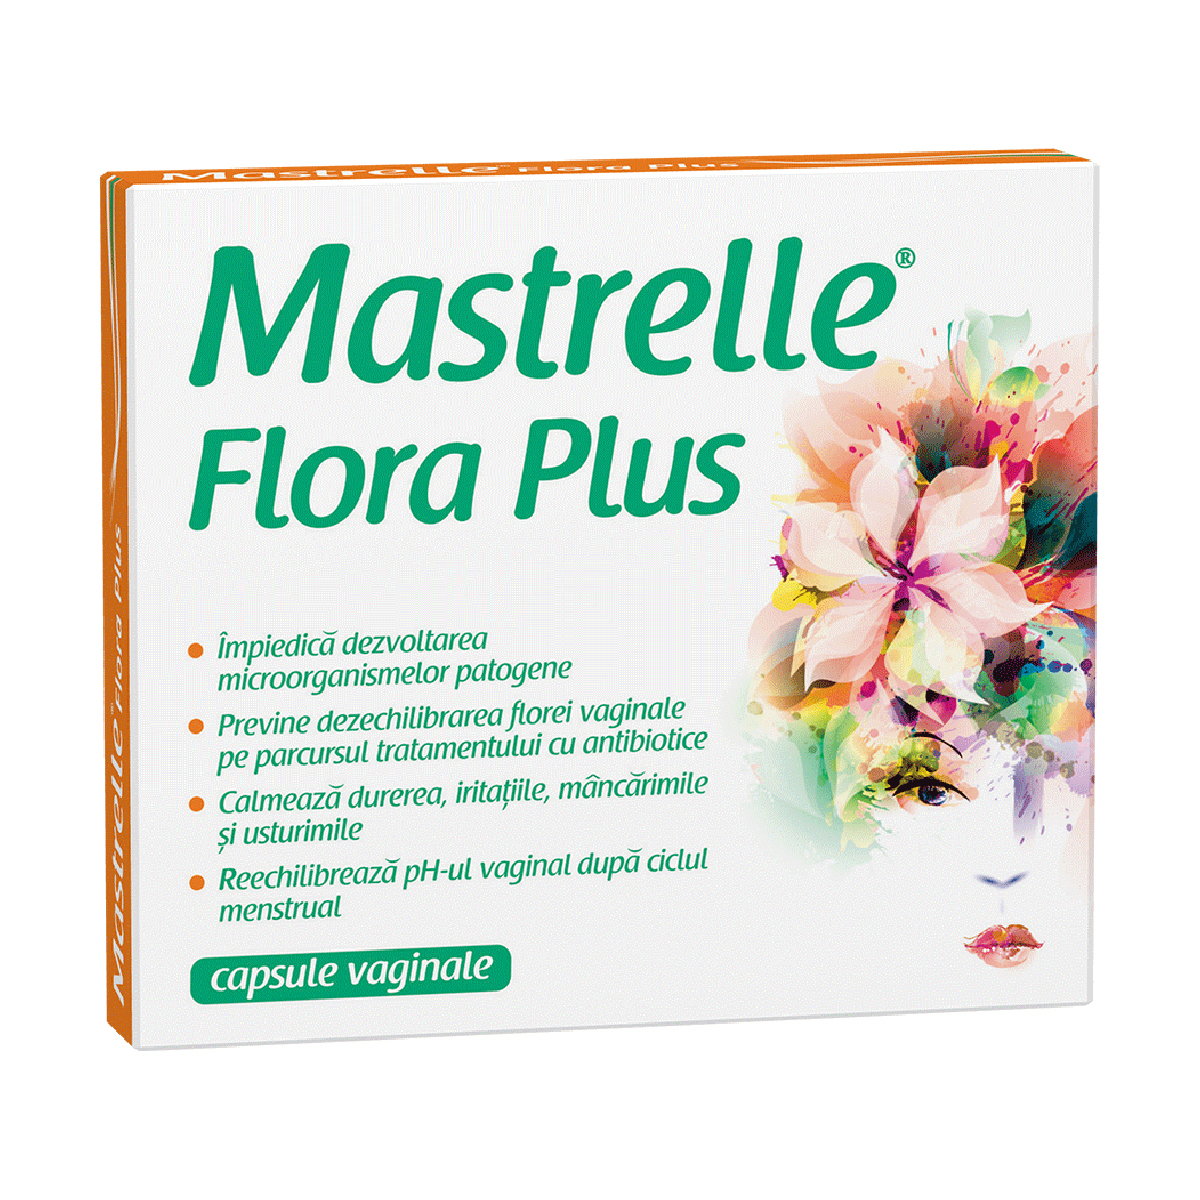 Mastrelle Flora Plus, 10 capsule vaginale Mastrelle imagine noua